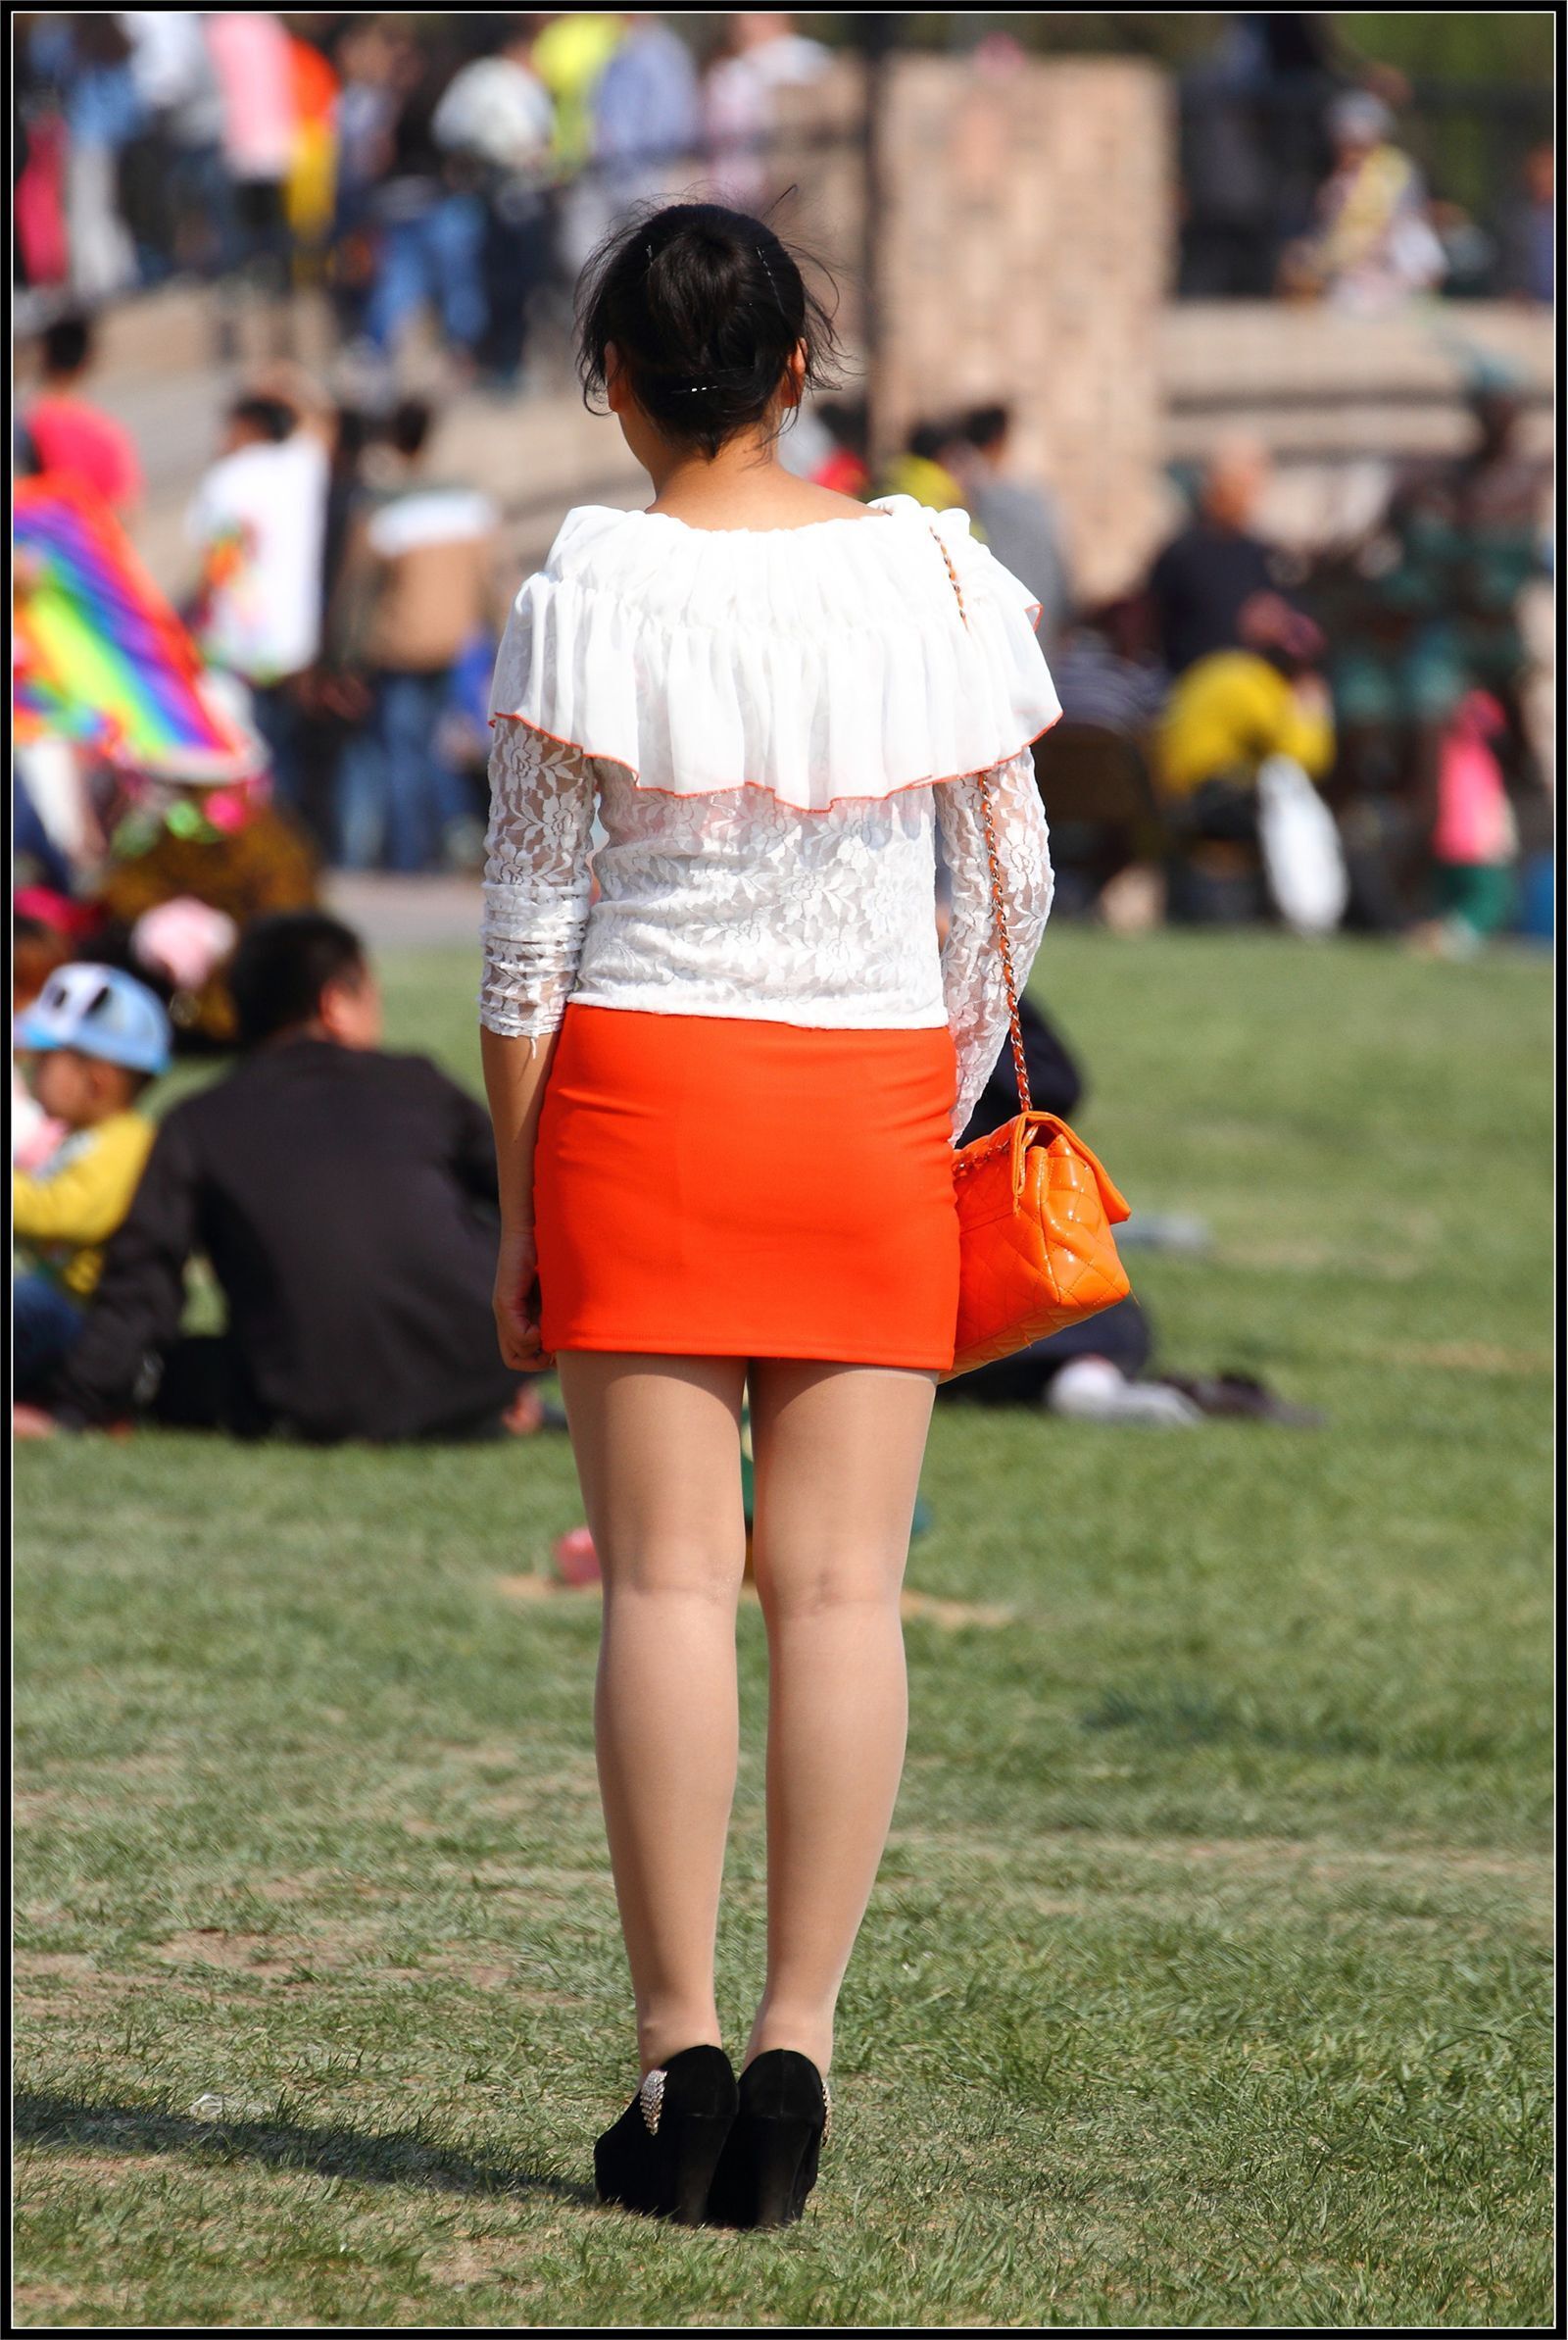 [户外街拍] 2013.09.25 橘红色与白色套裙那么的迷人